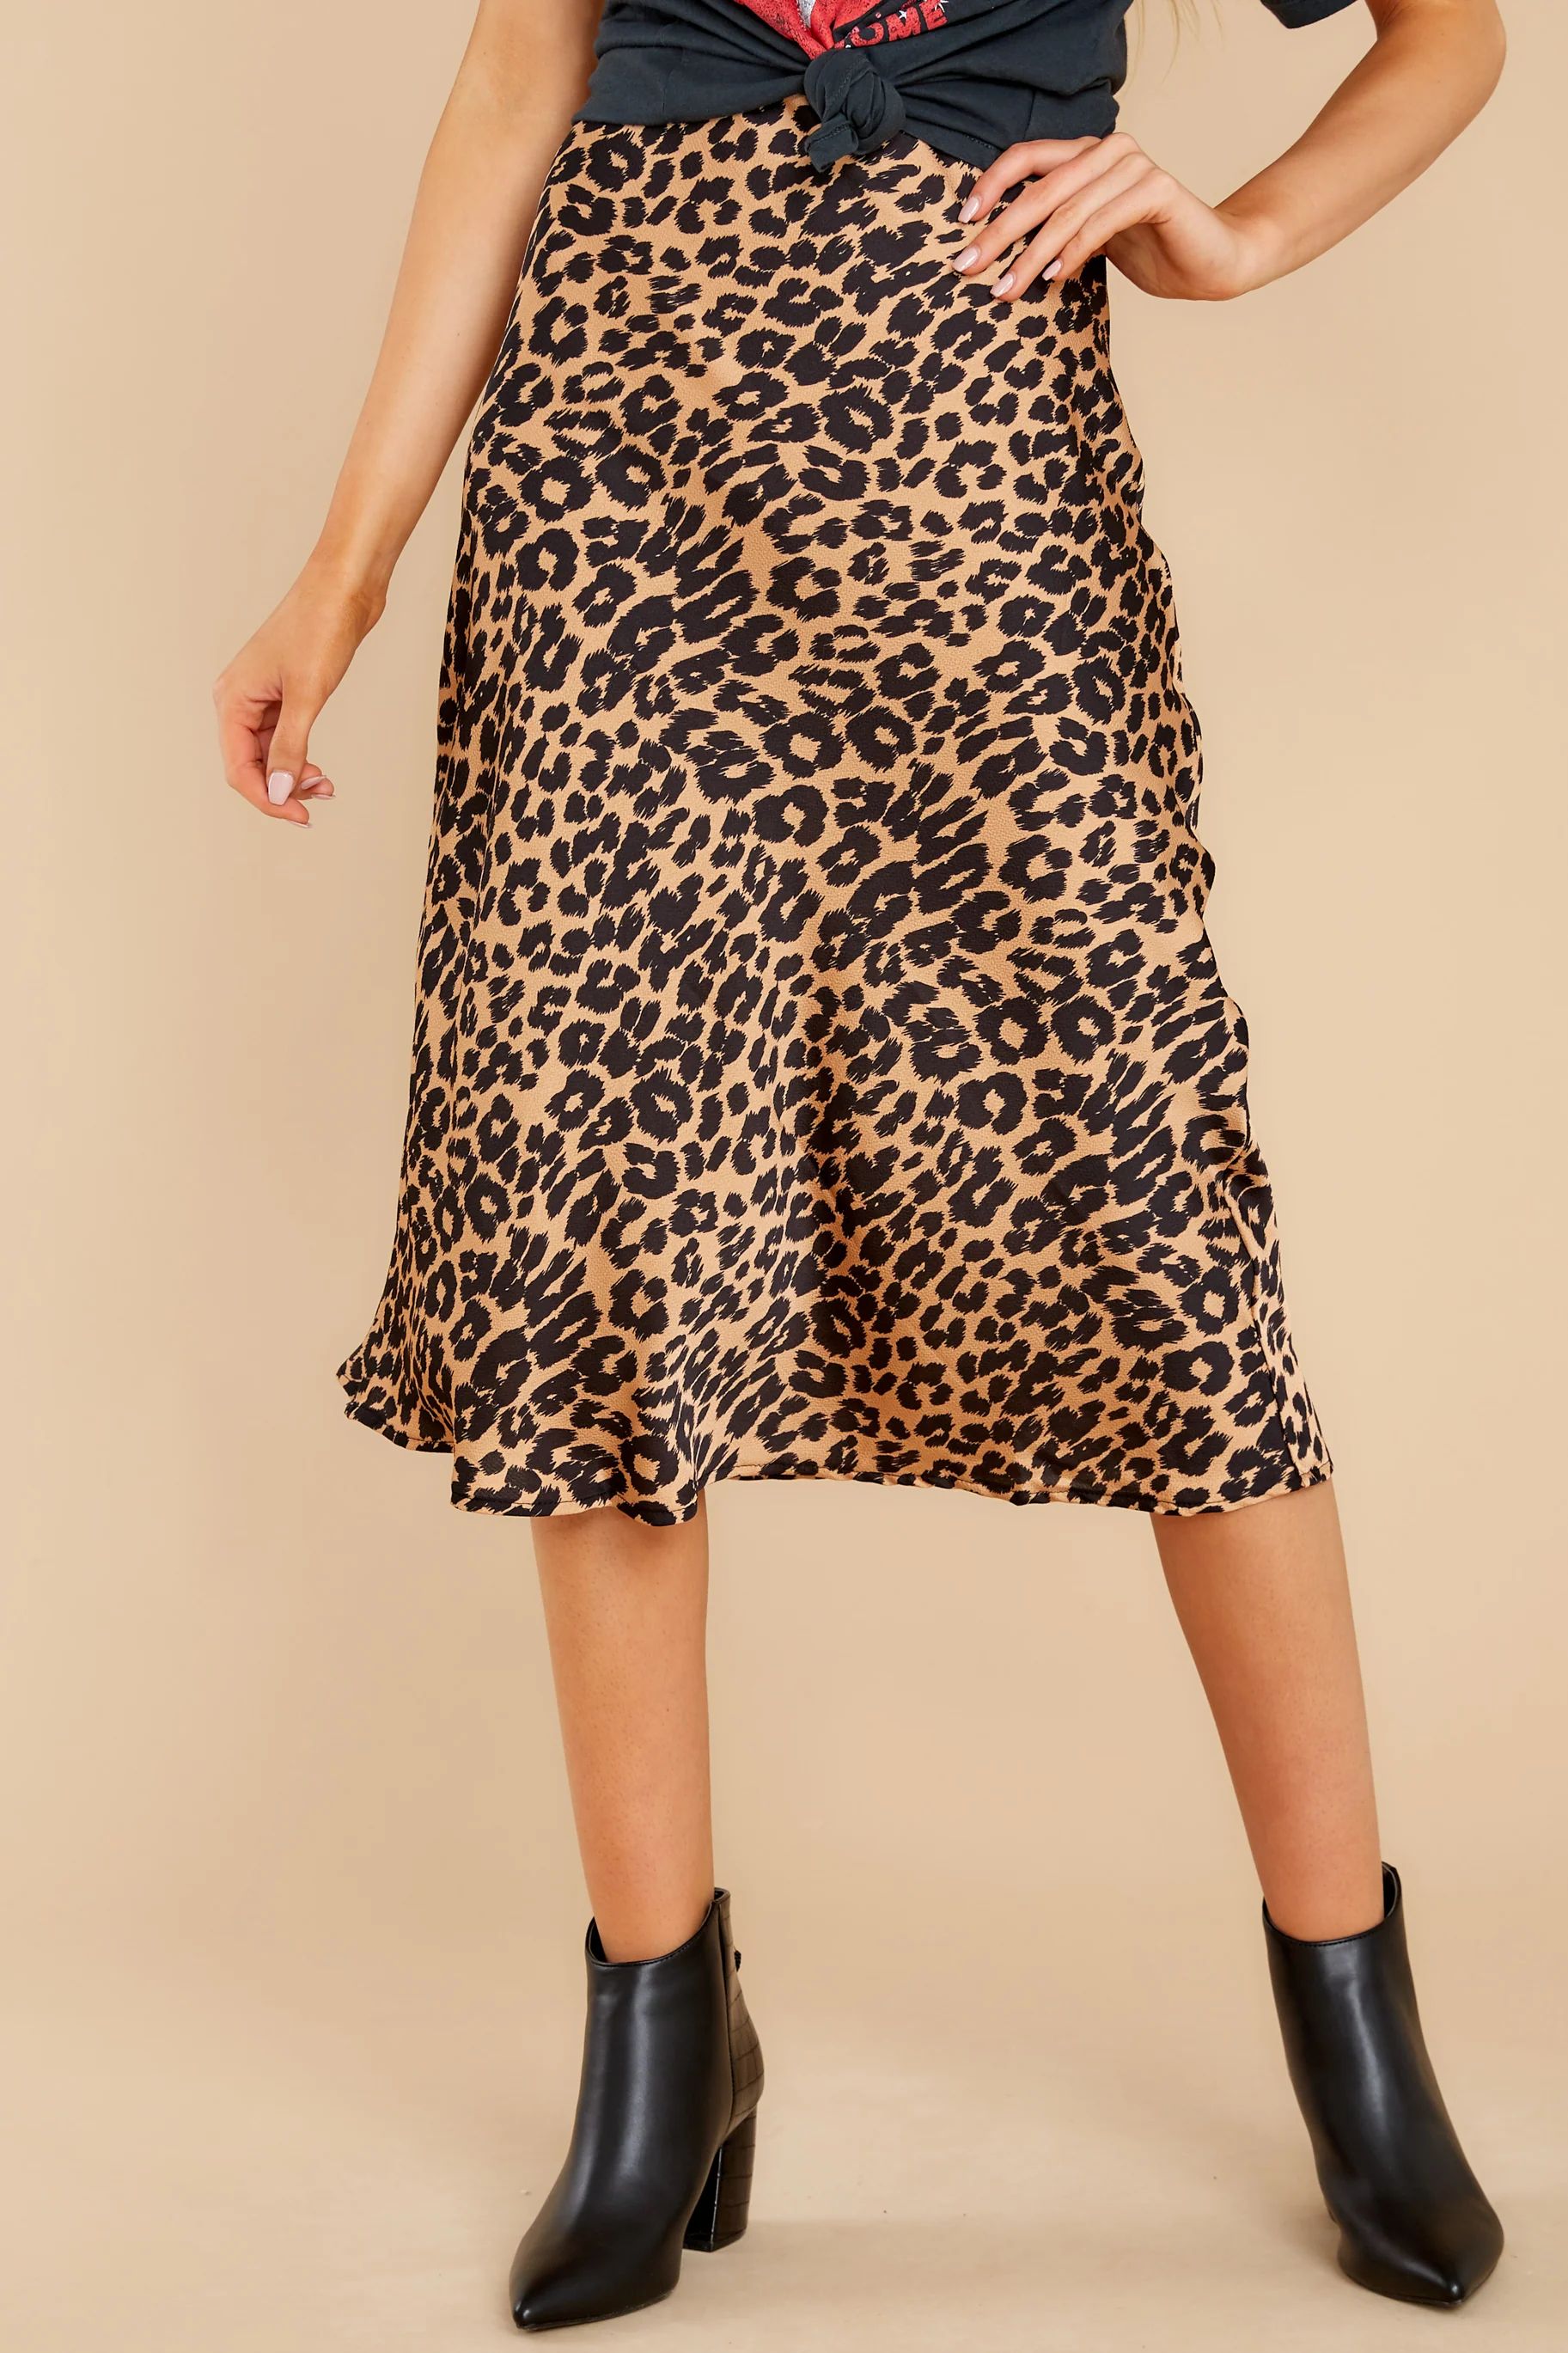 Cool Again Tan Leopard Print Midi Skirt | Red Dress 